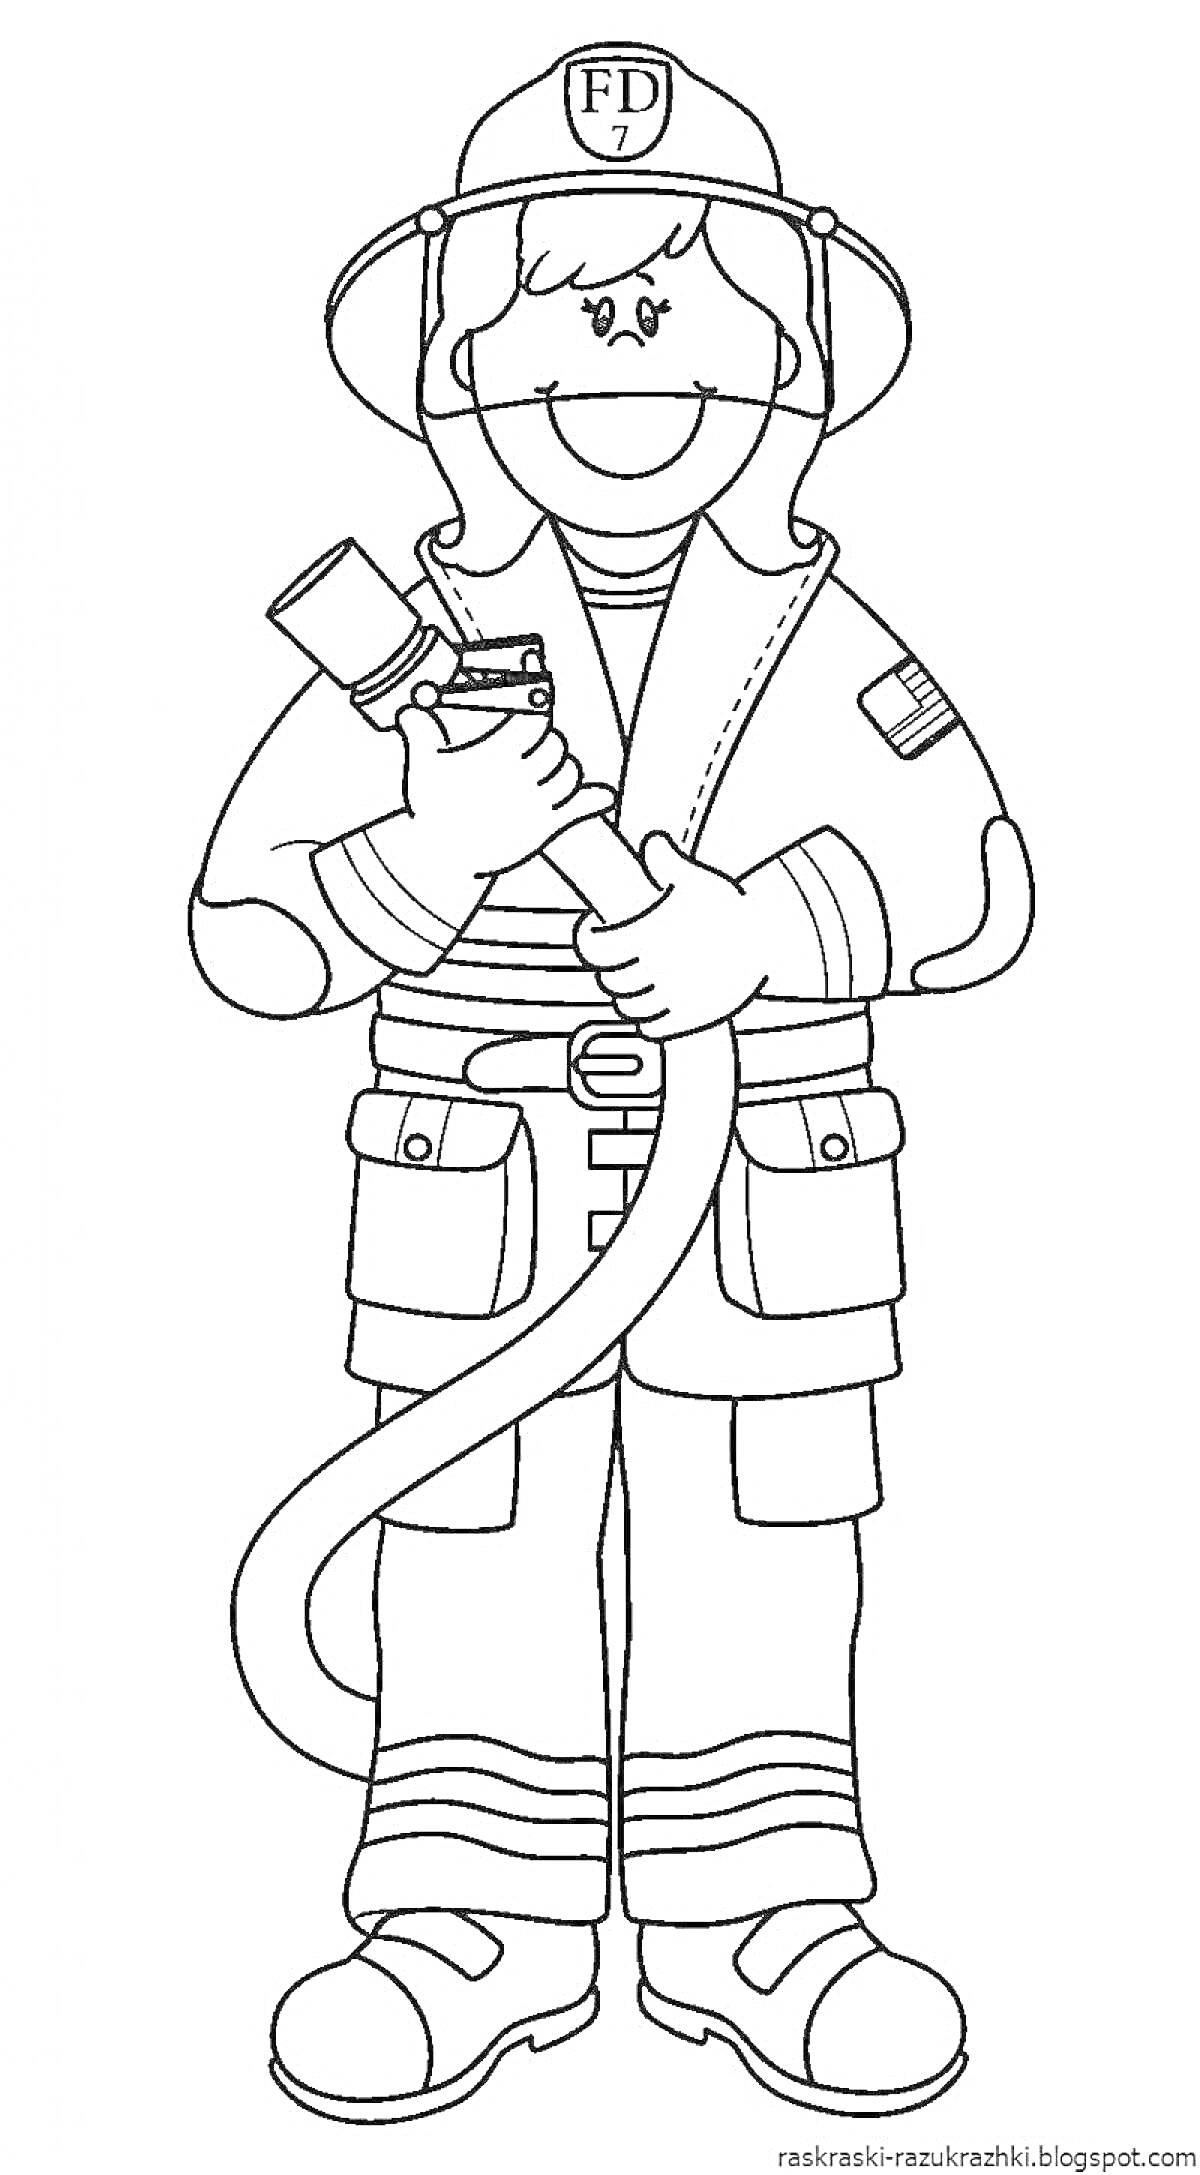 Раскраска Пожарник с пожарным рукавом в полном обмундировании